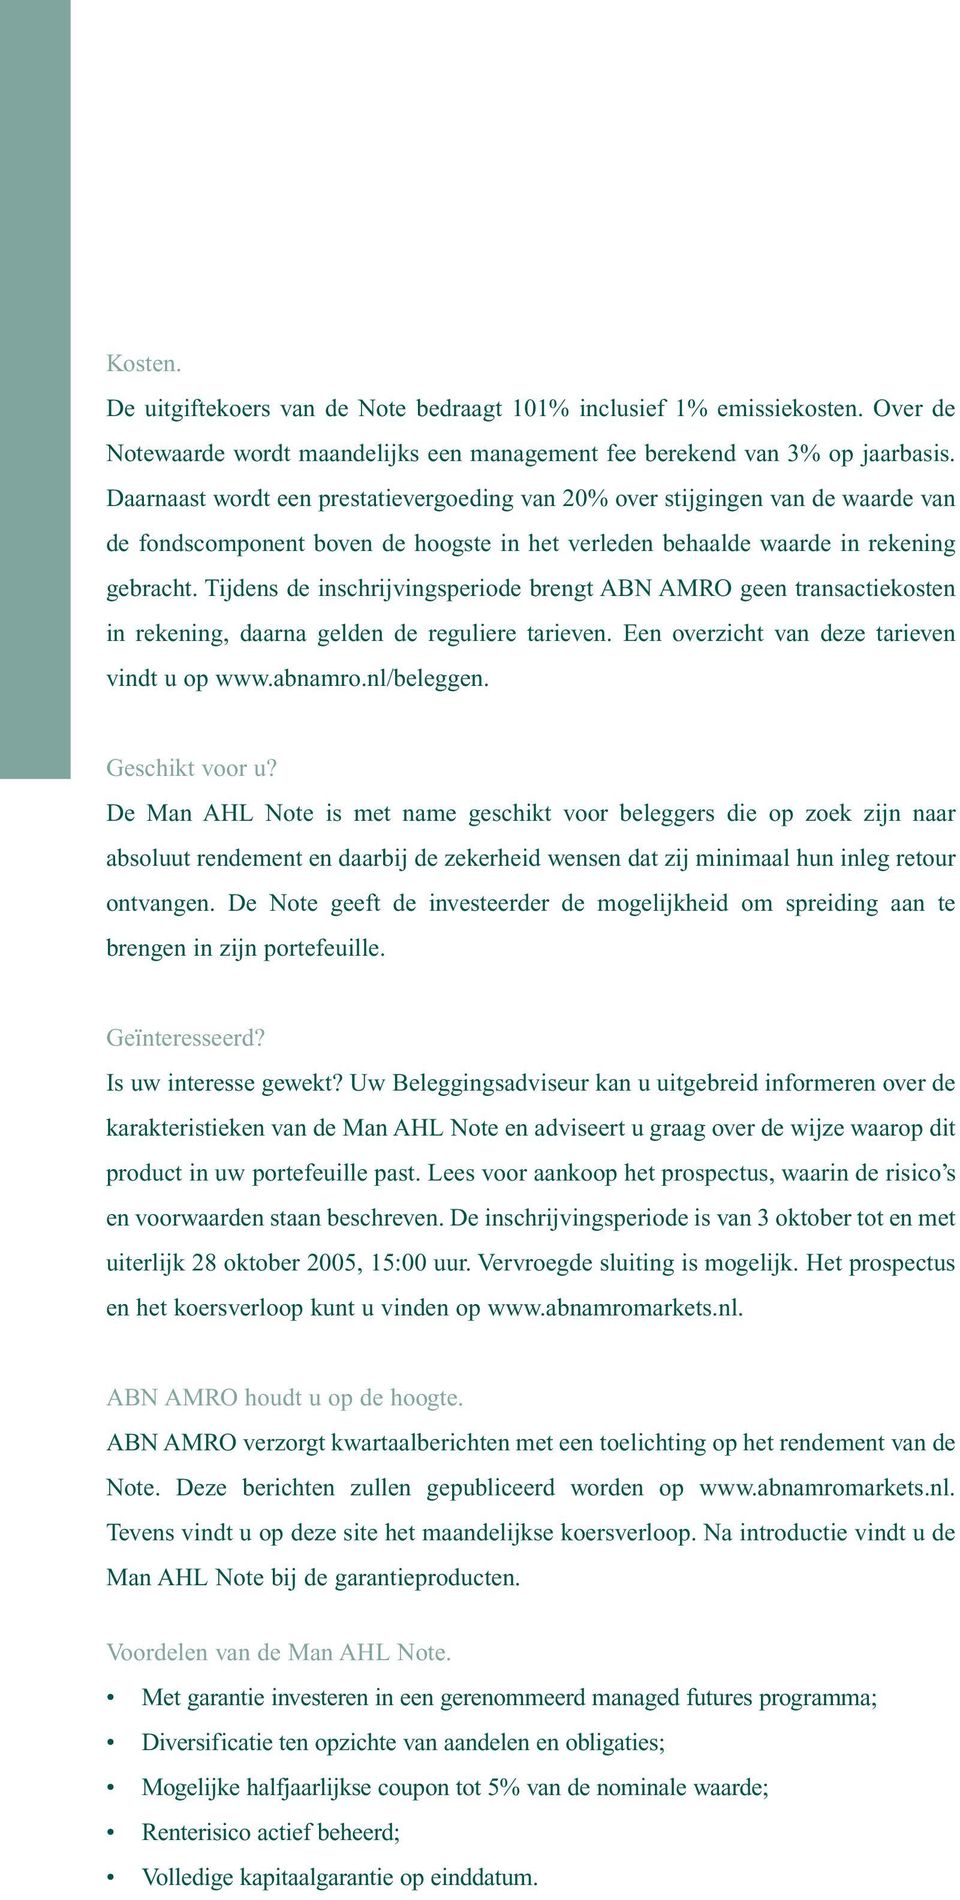 Tijdens de inschrijvingsperiode brengt ABN AMRO geen transactiekosten in rekening, daarna gelden de reguliere tarieven. Een overzicht van deze tarieven vindt u op www.abnamro.nl/beleggen.